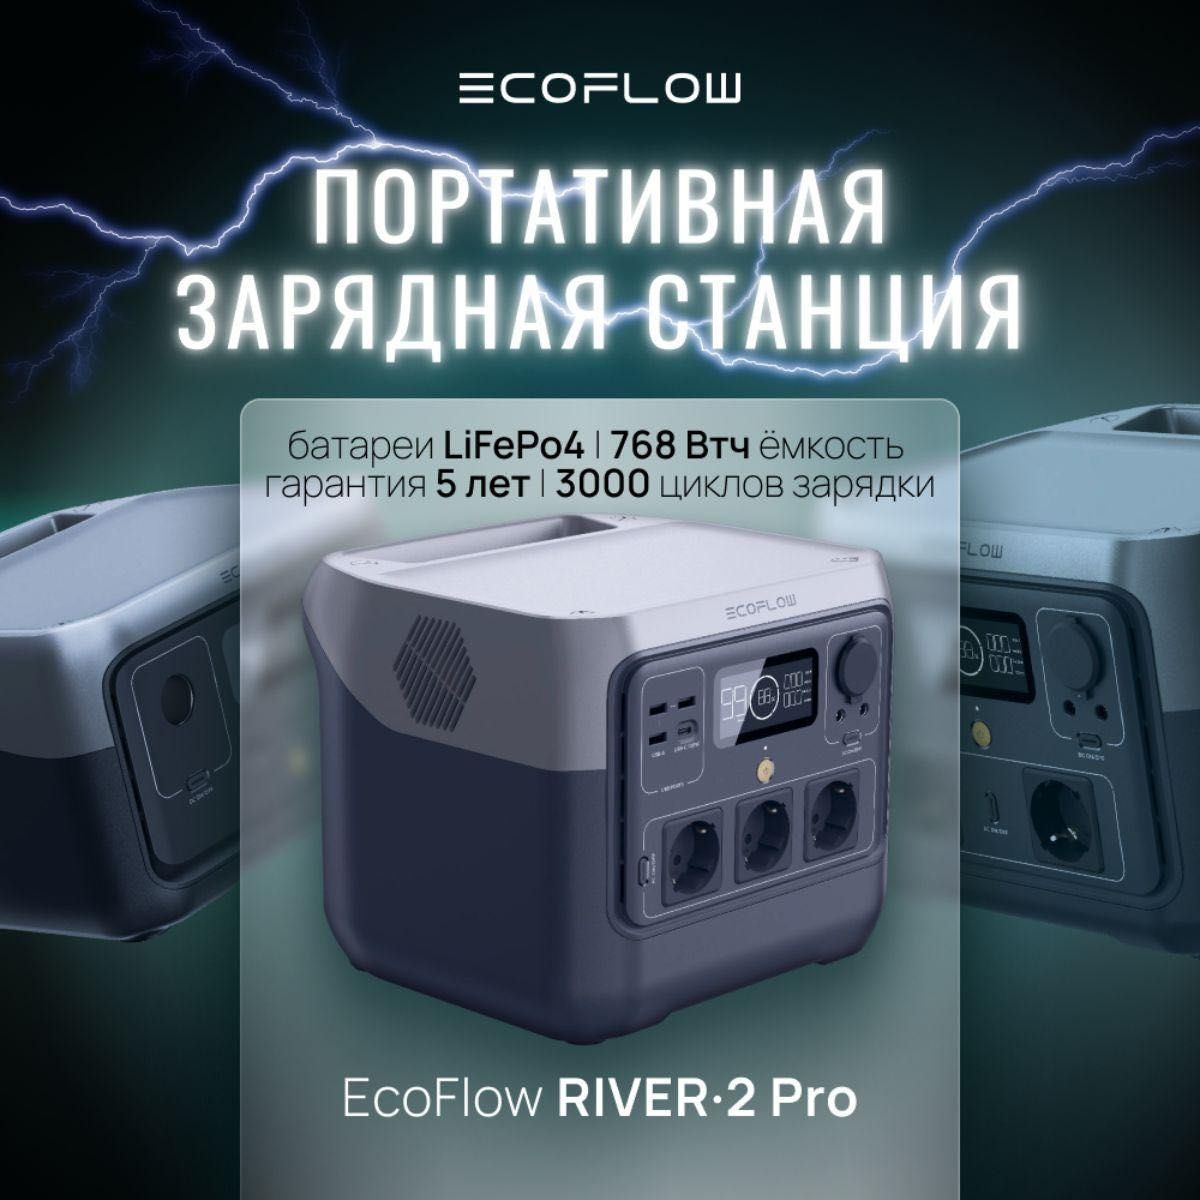 Срочно.Ecoflow river 2 pro. 768 Втч. Портативная электронная станция.